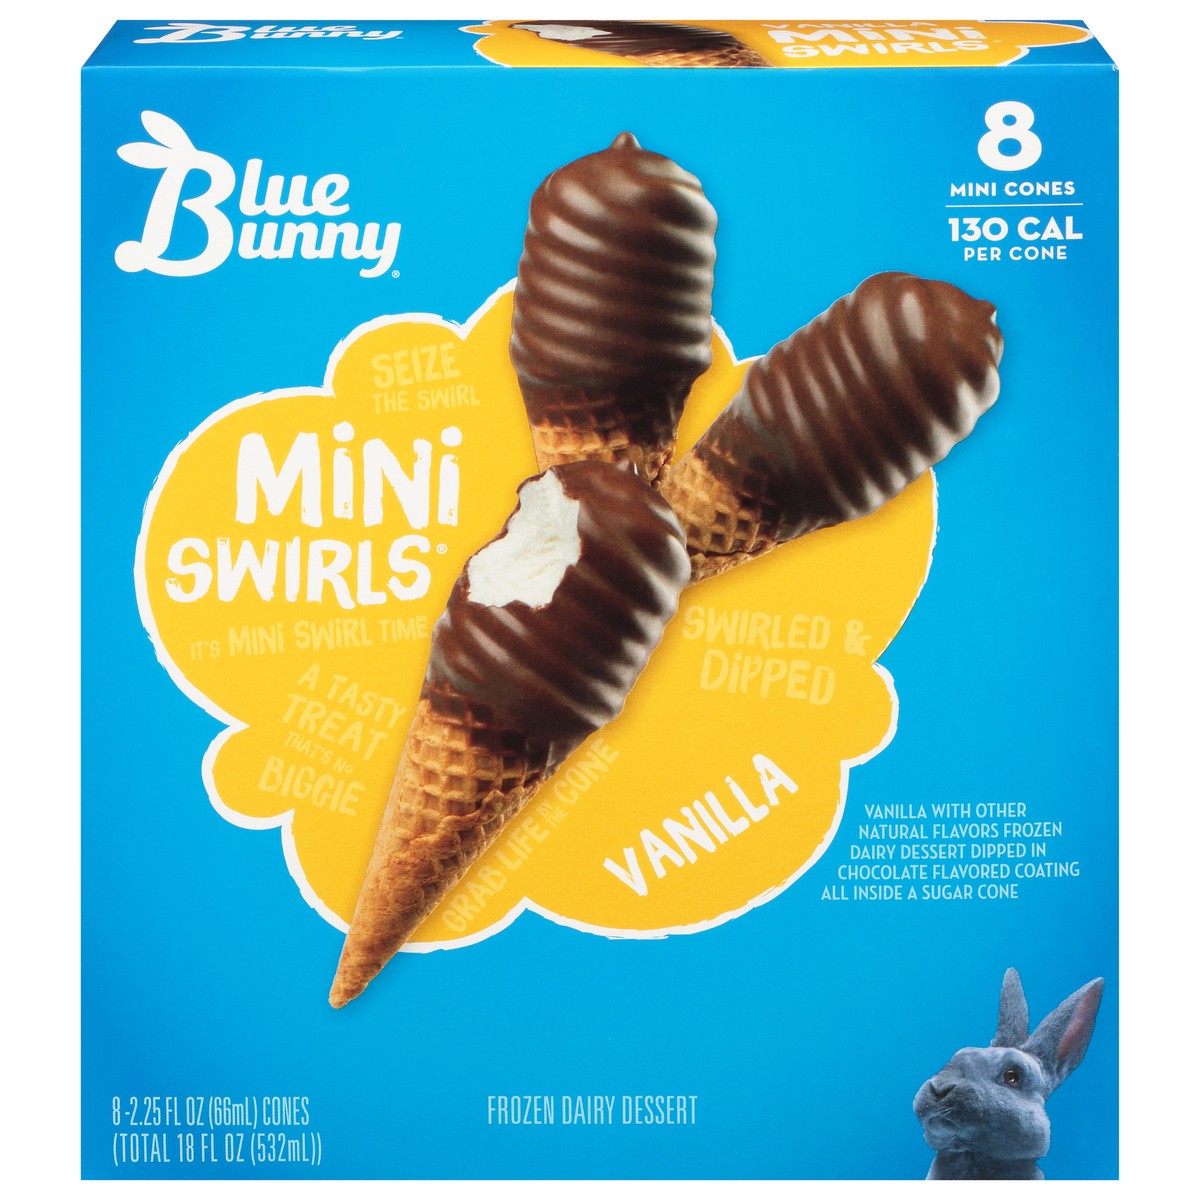 slide 1 of 40, Blue Bunny Mini Swirls Vanilla Cones, Frozen Dessert, 8 Pack, 8 ct